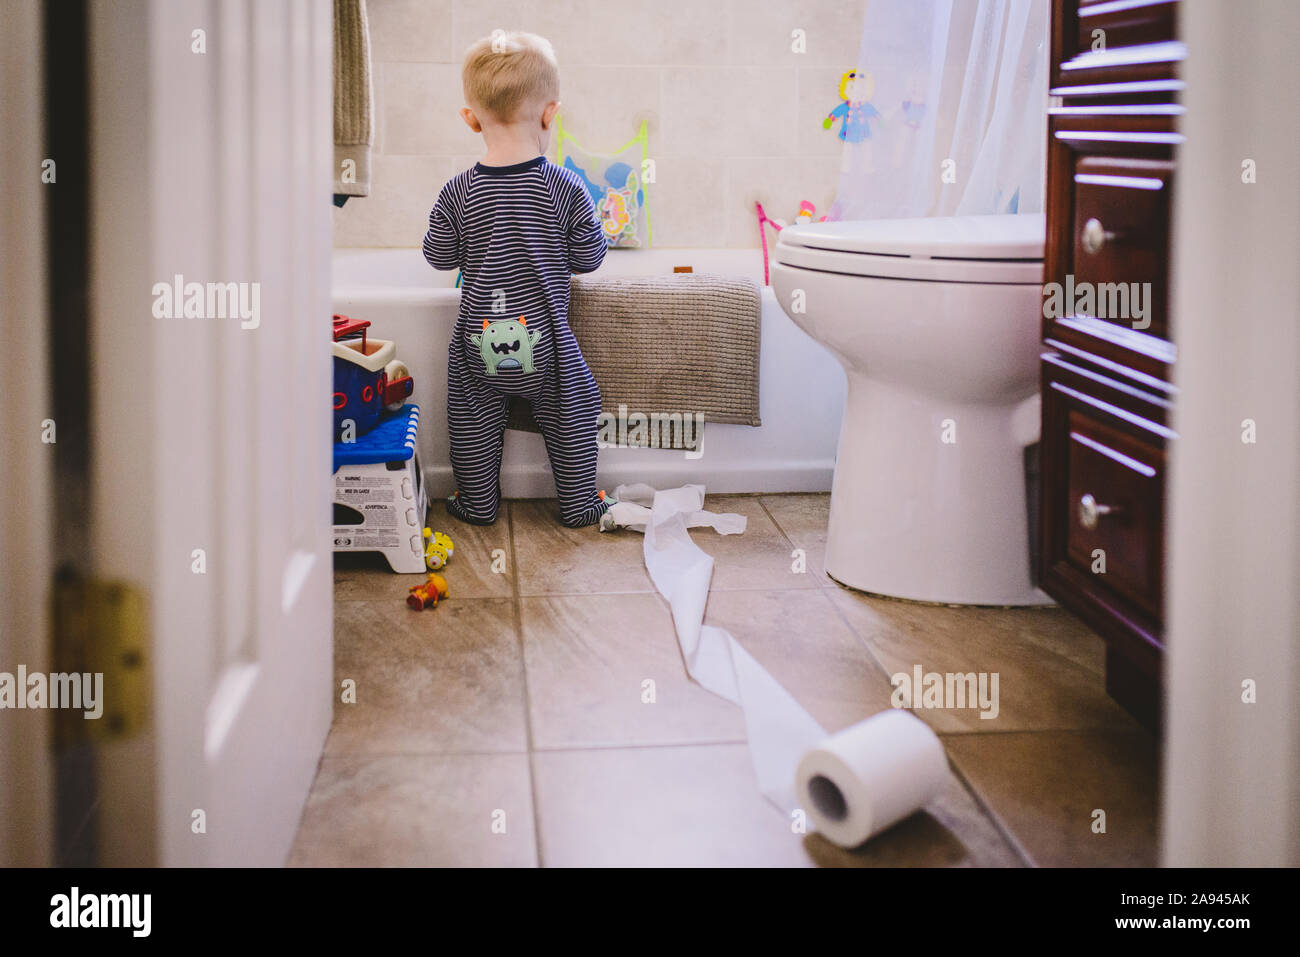 Un niño se encuentra en un cuarto de baño con un rollo de papel higiénico develada. Foto de stock